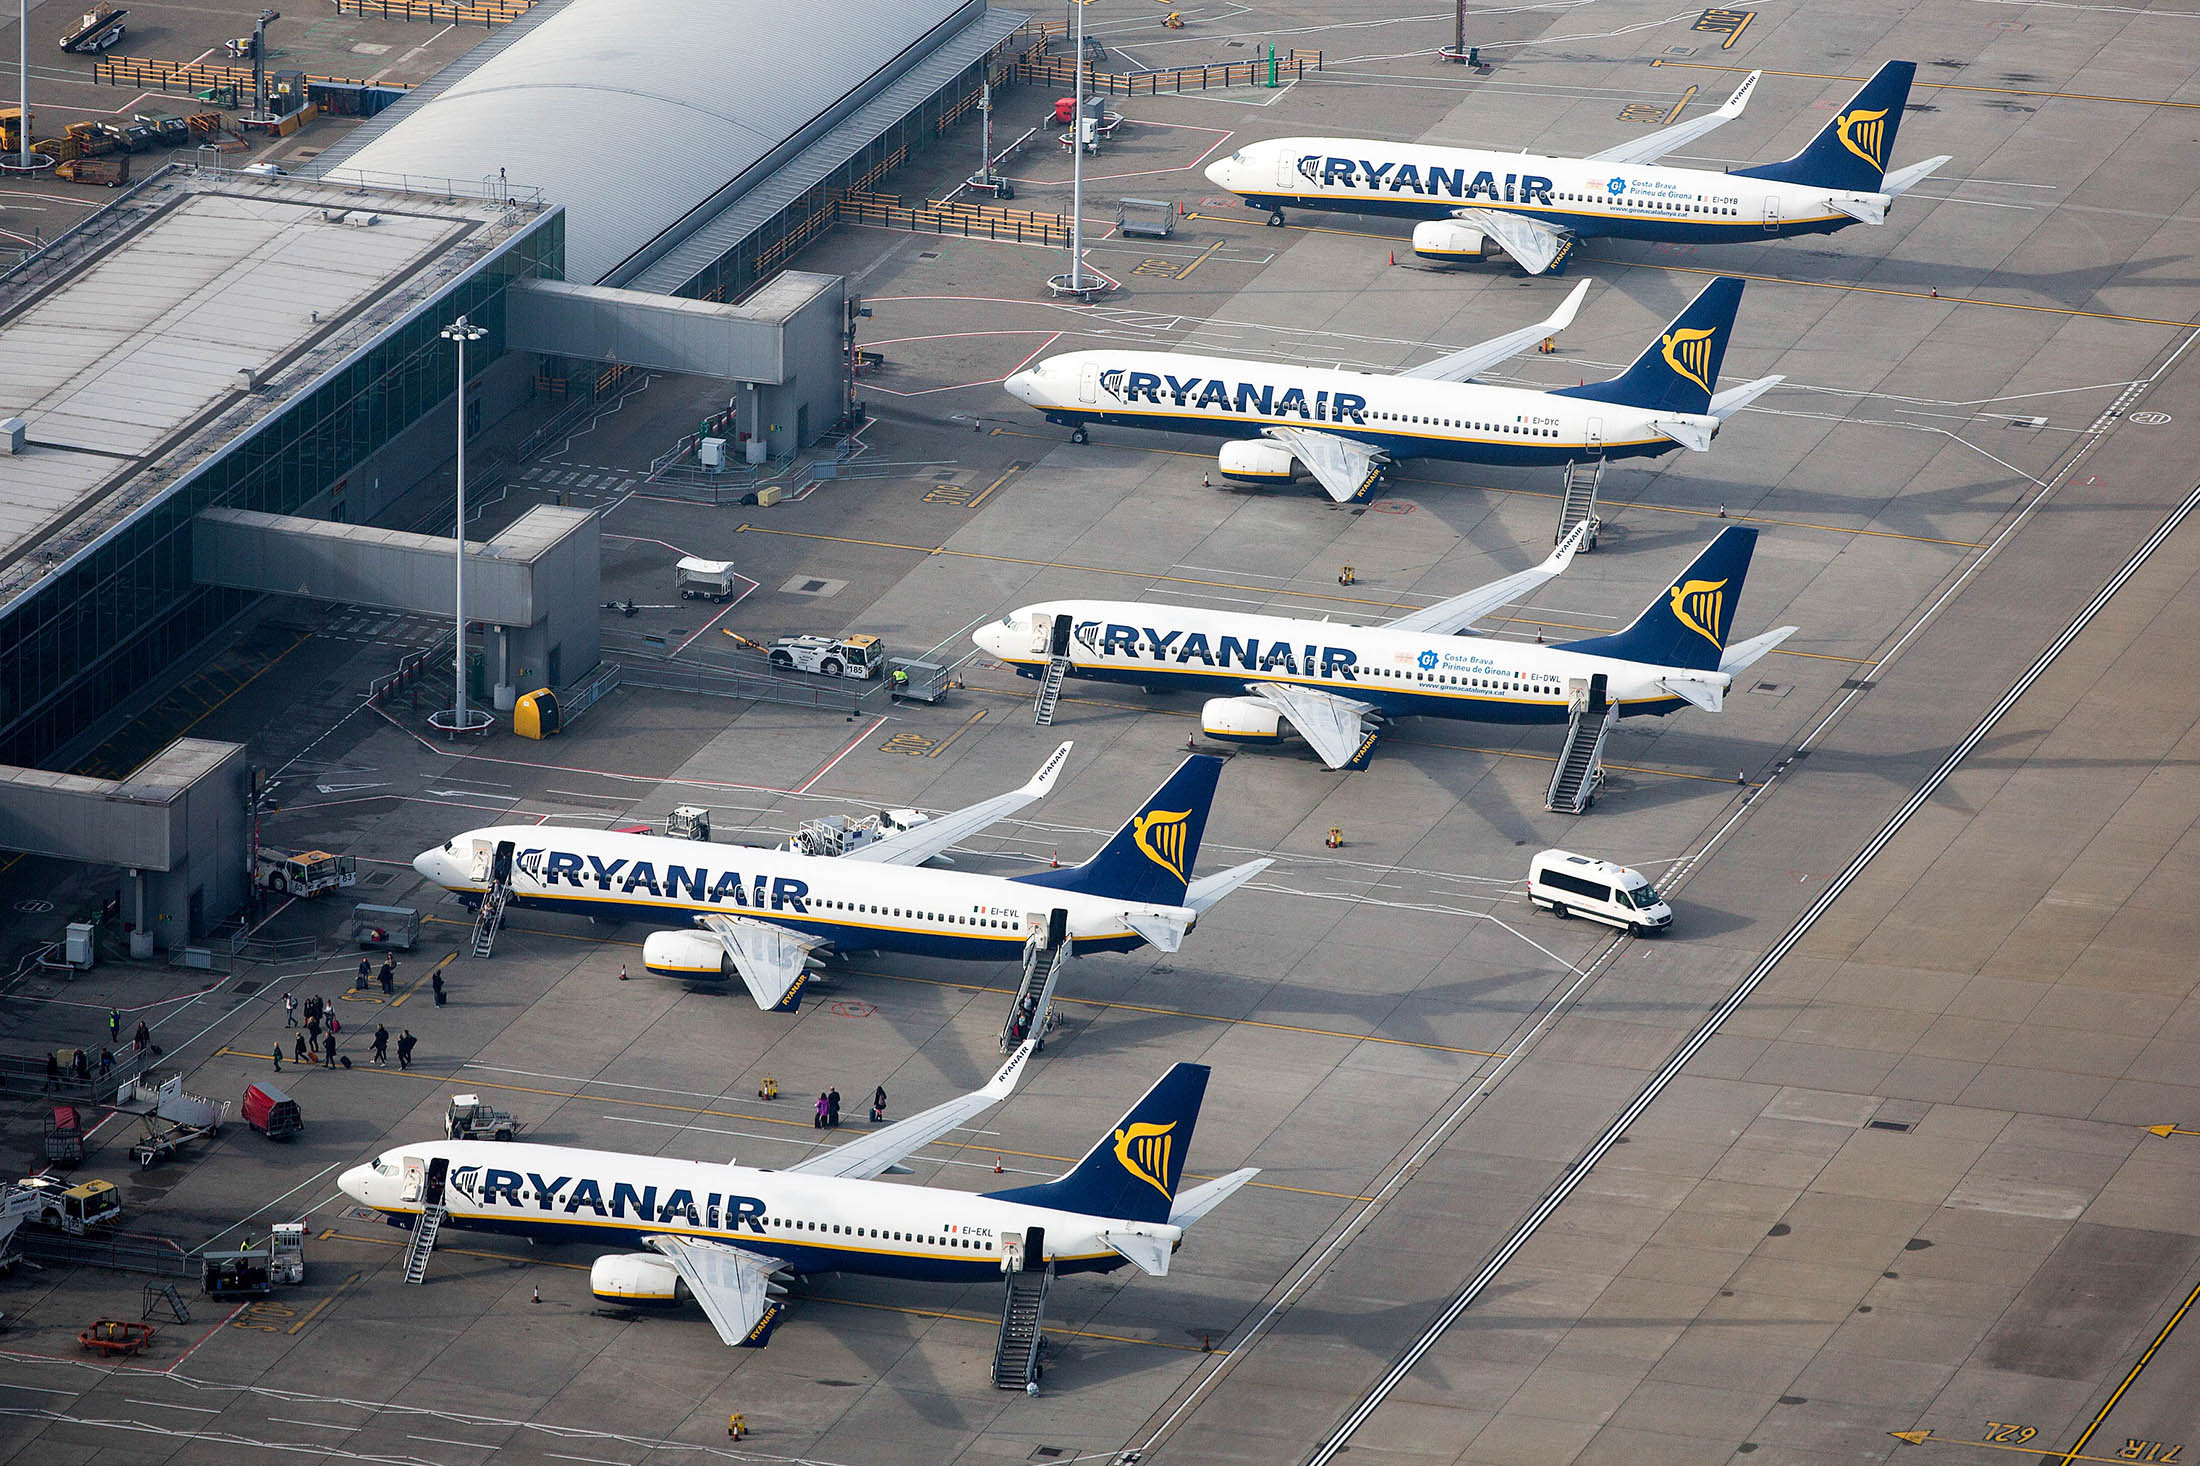 Αποτέλεσμα εικόνας για Ryanair decision could cost up to £53m. in payouts, flight compensation company SKYCOP reveals